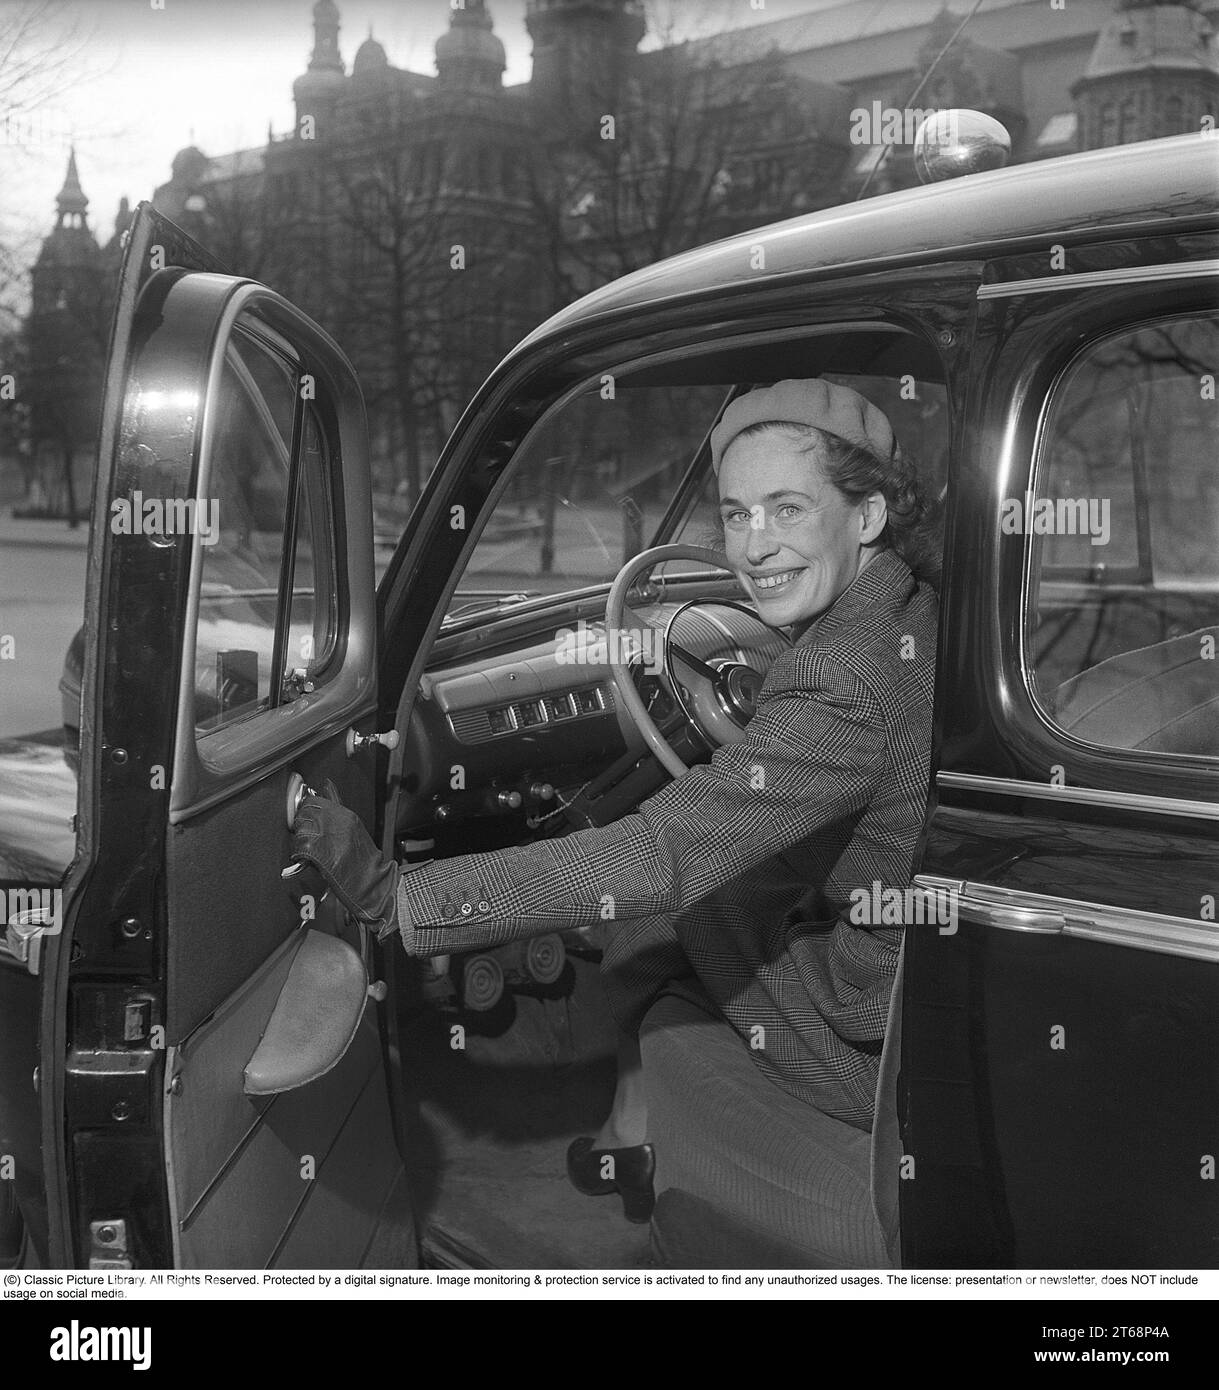 Dans les années 1940 Une jeune femme au volant de sa voiture de la marque automobile américaine Ford. Elle est vêtue d'un costume deux pièces, d'une jupe et d'une veste courte en tissu de laine à chevrons. La photo a été prise à Stockholm en Suède en 1949. Kristoffersson réf. AY83-12 Banque D'Images